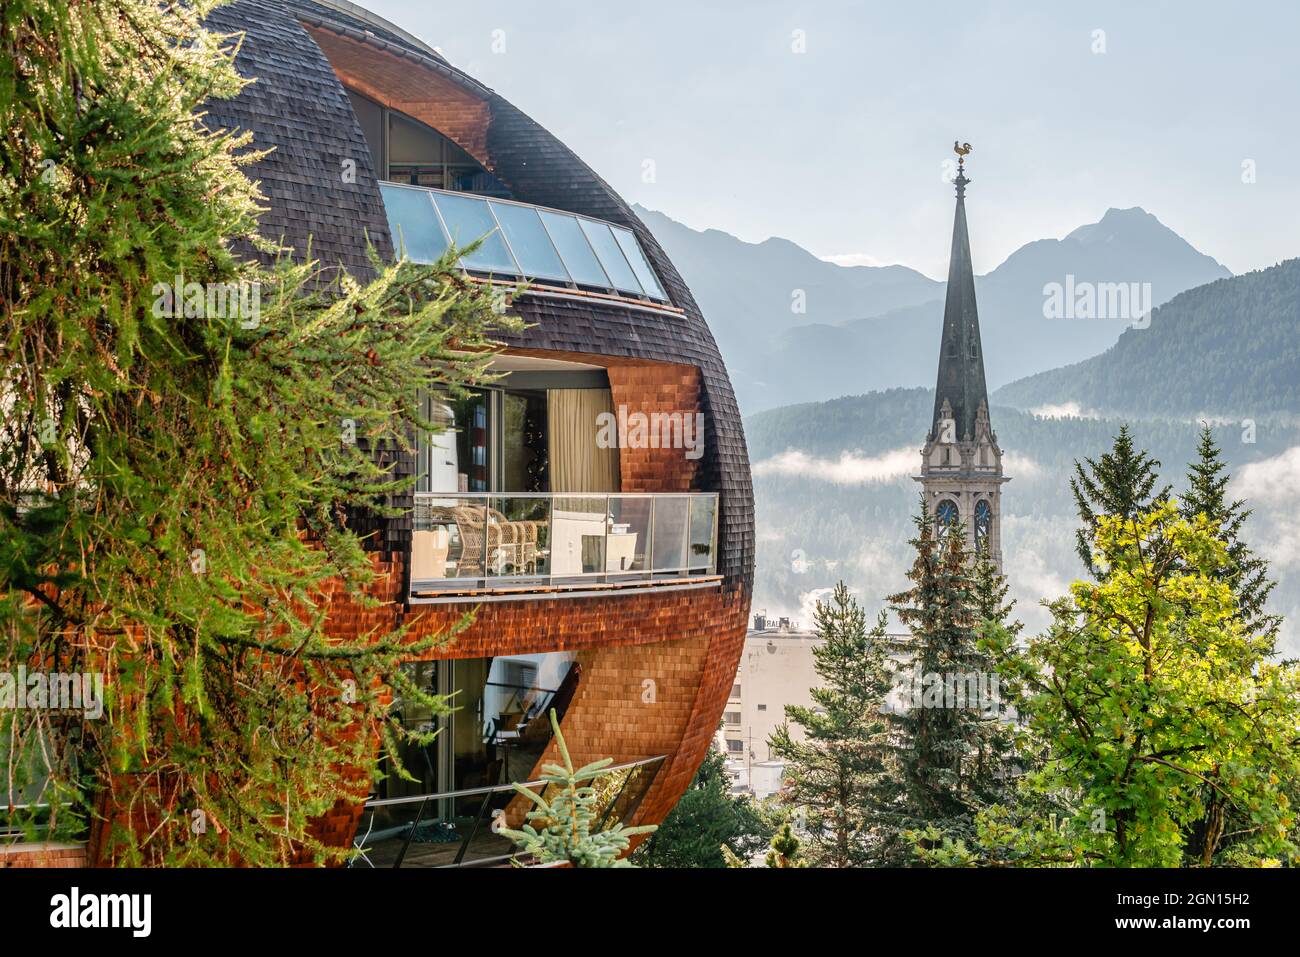 Chesa futura, construido por el famoso arquitecto británico Lord Norman Foster, St.Moritz en invierno, Grisons, Suiza Foto de stock